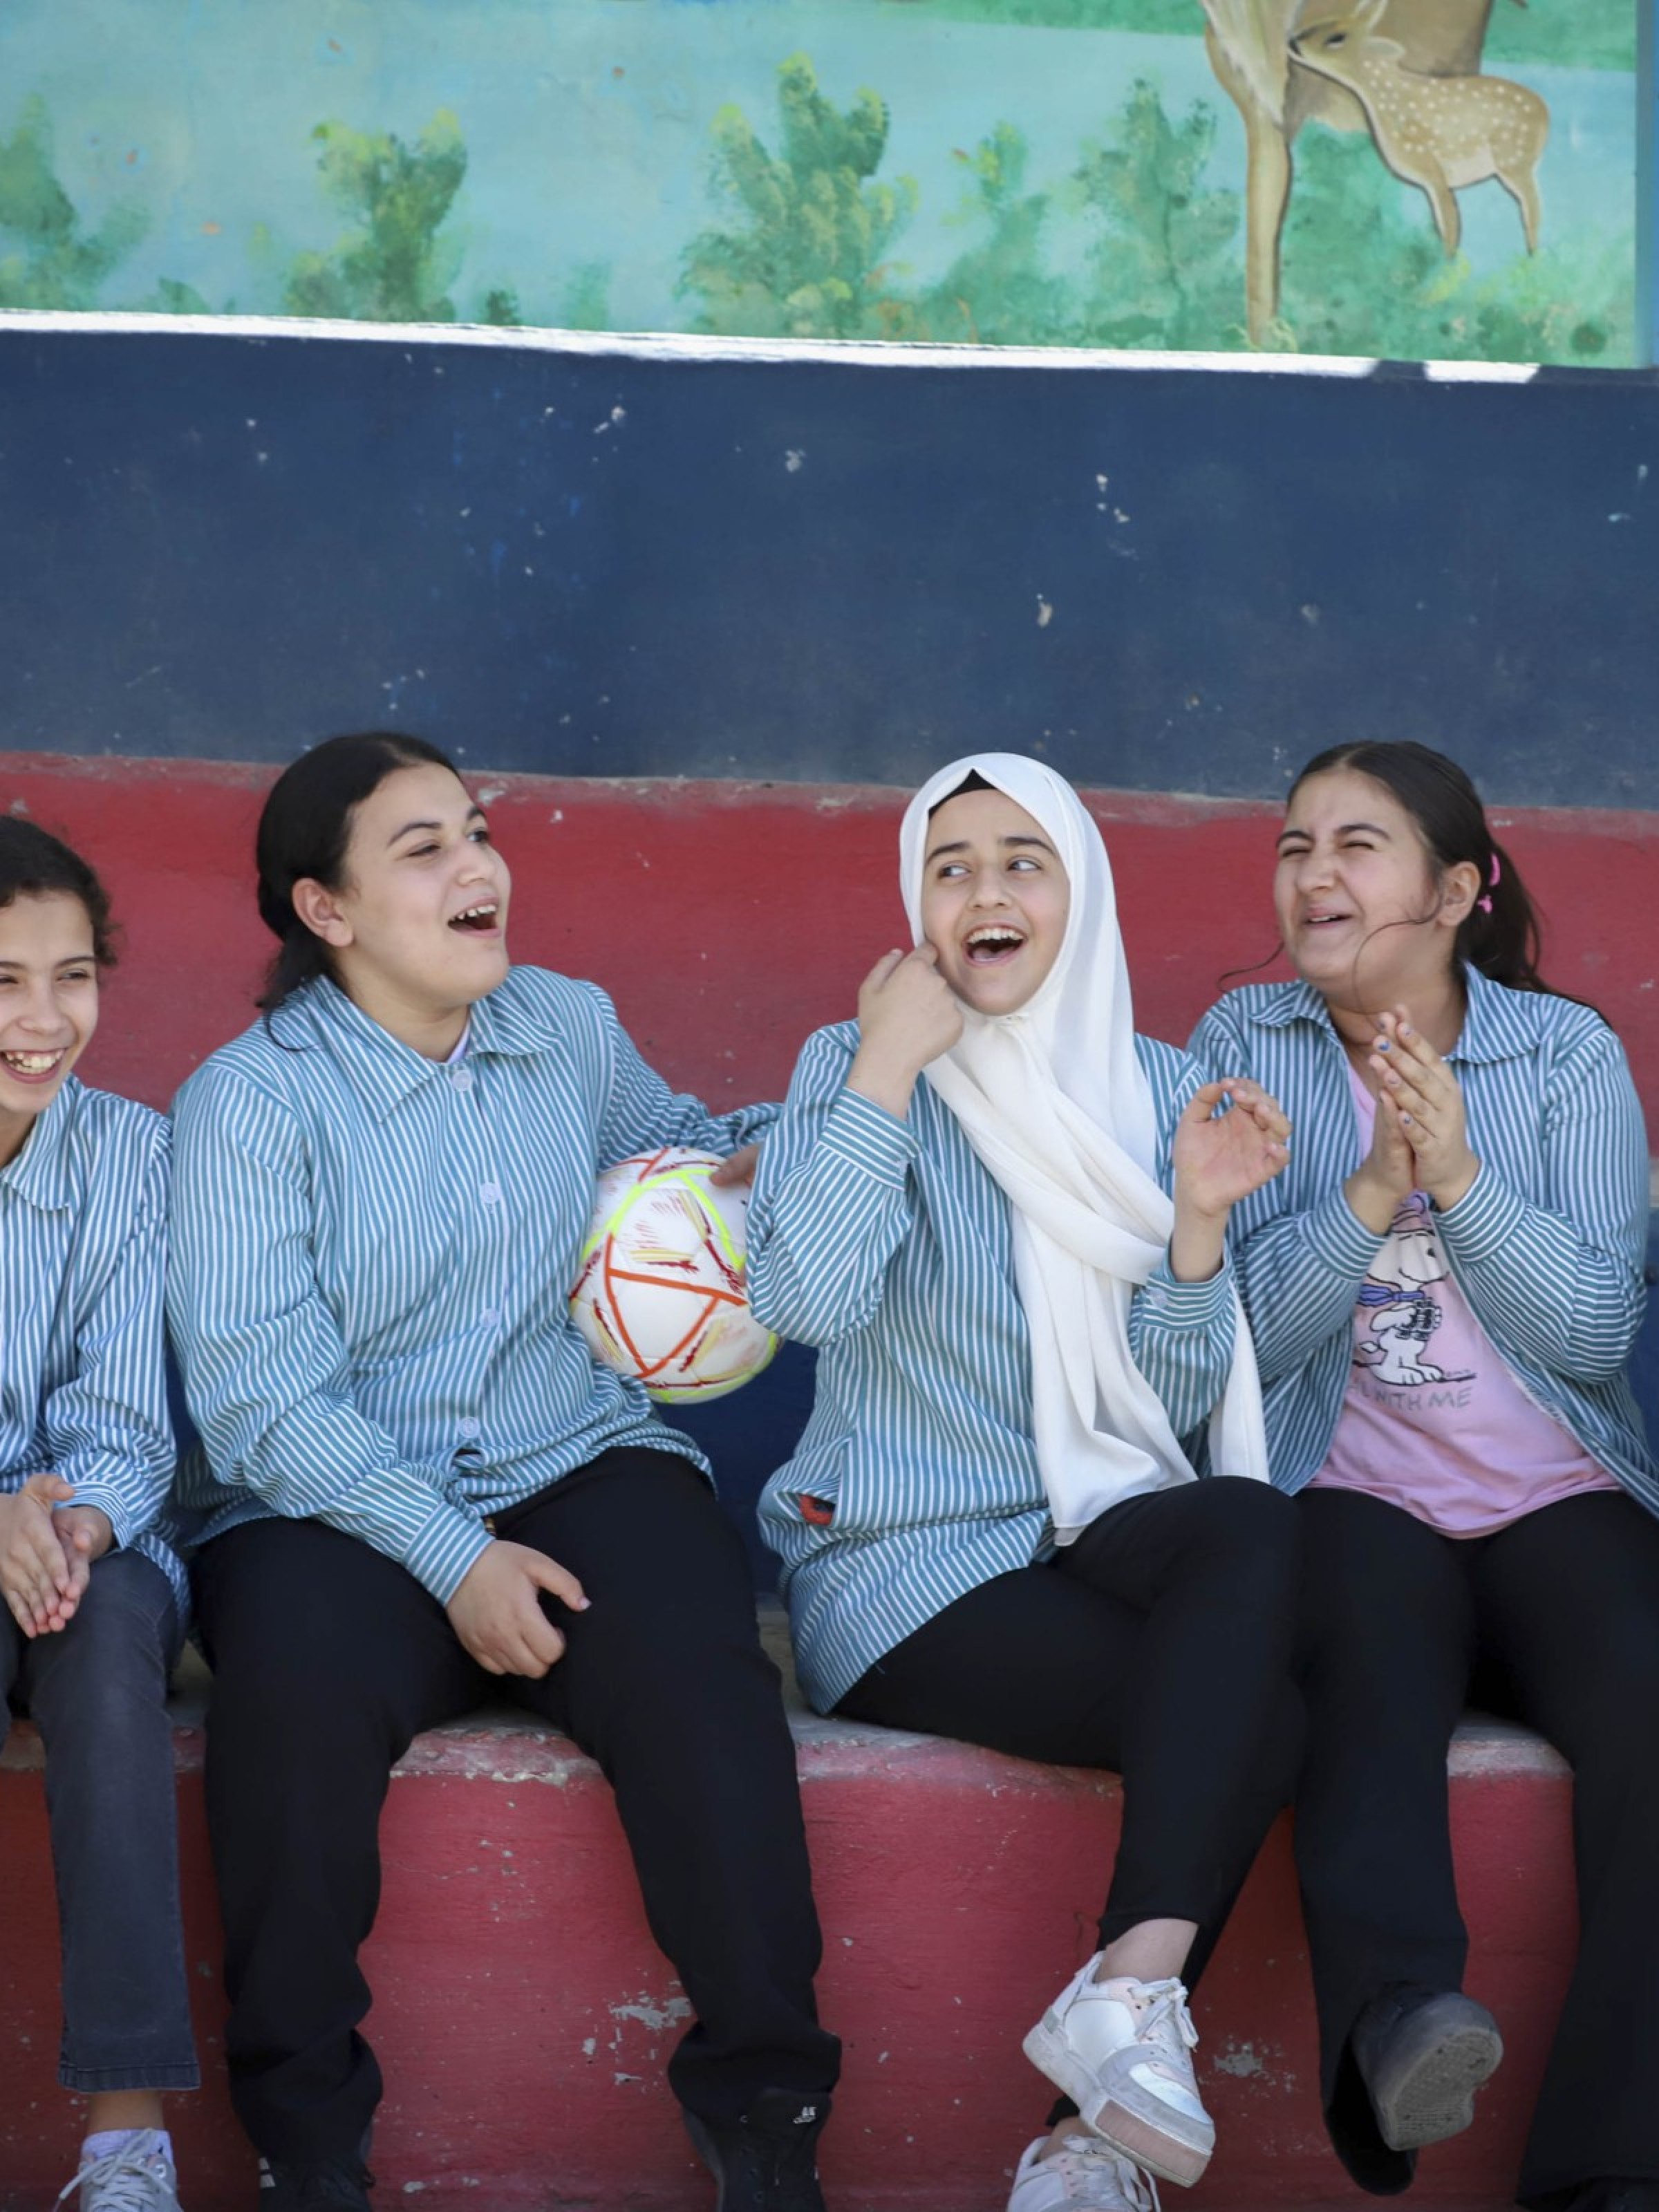 Junge Frauen in der Westbank sitzen an einem Spielfeldrand mit einem Fussball und lachen